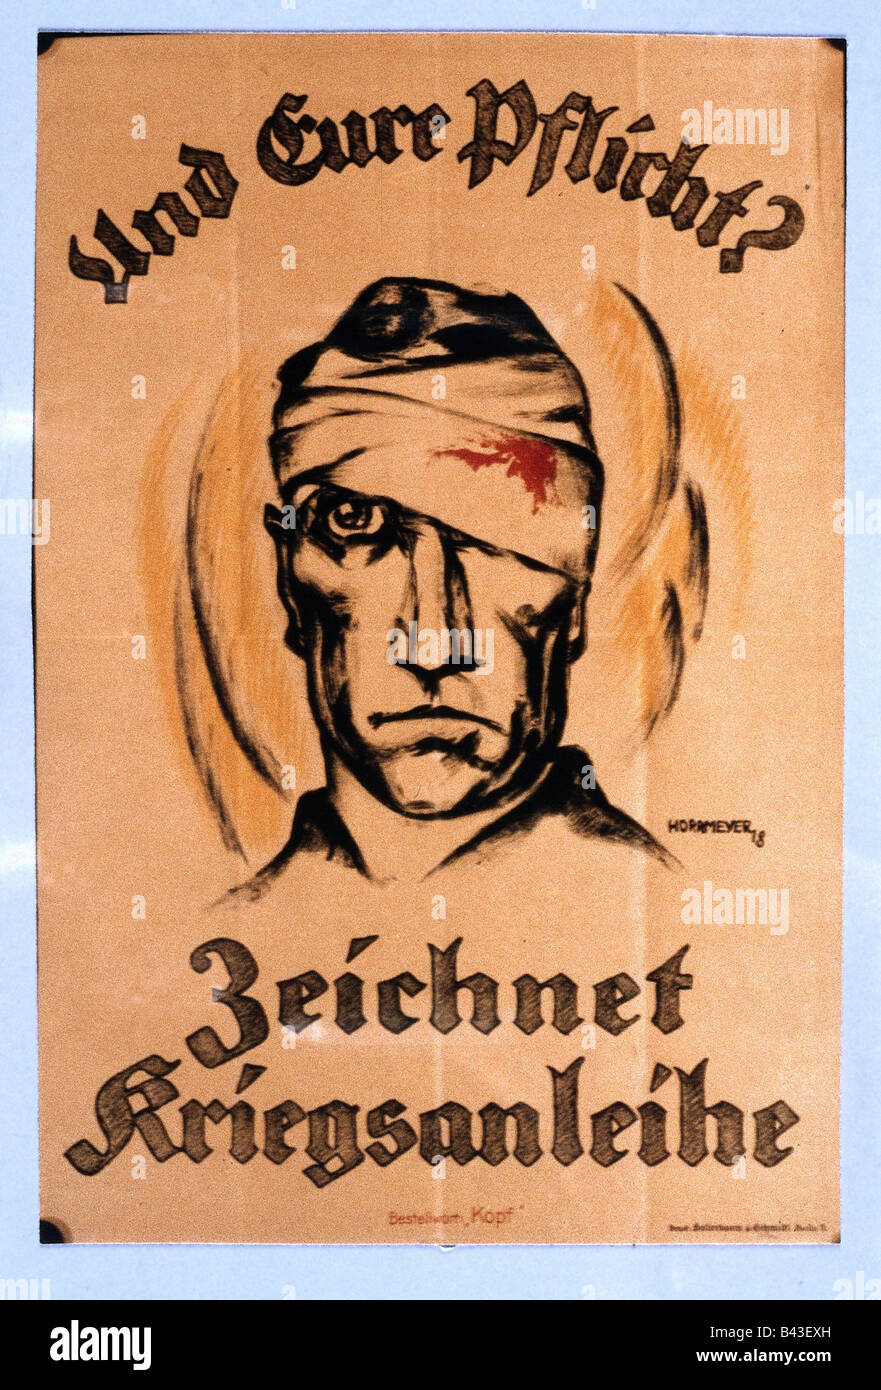 events, First World War / WWI, propaganda, poster 'Und Eure Pflicht? Zeichnet Kriegsanleihe' (And your duty? Buy war bonds), draft by Horrmeyer, Germany, 1918, Stock Photo